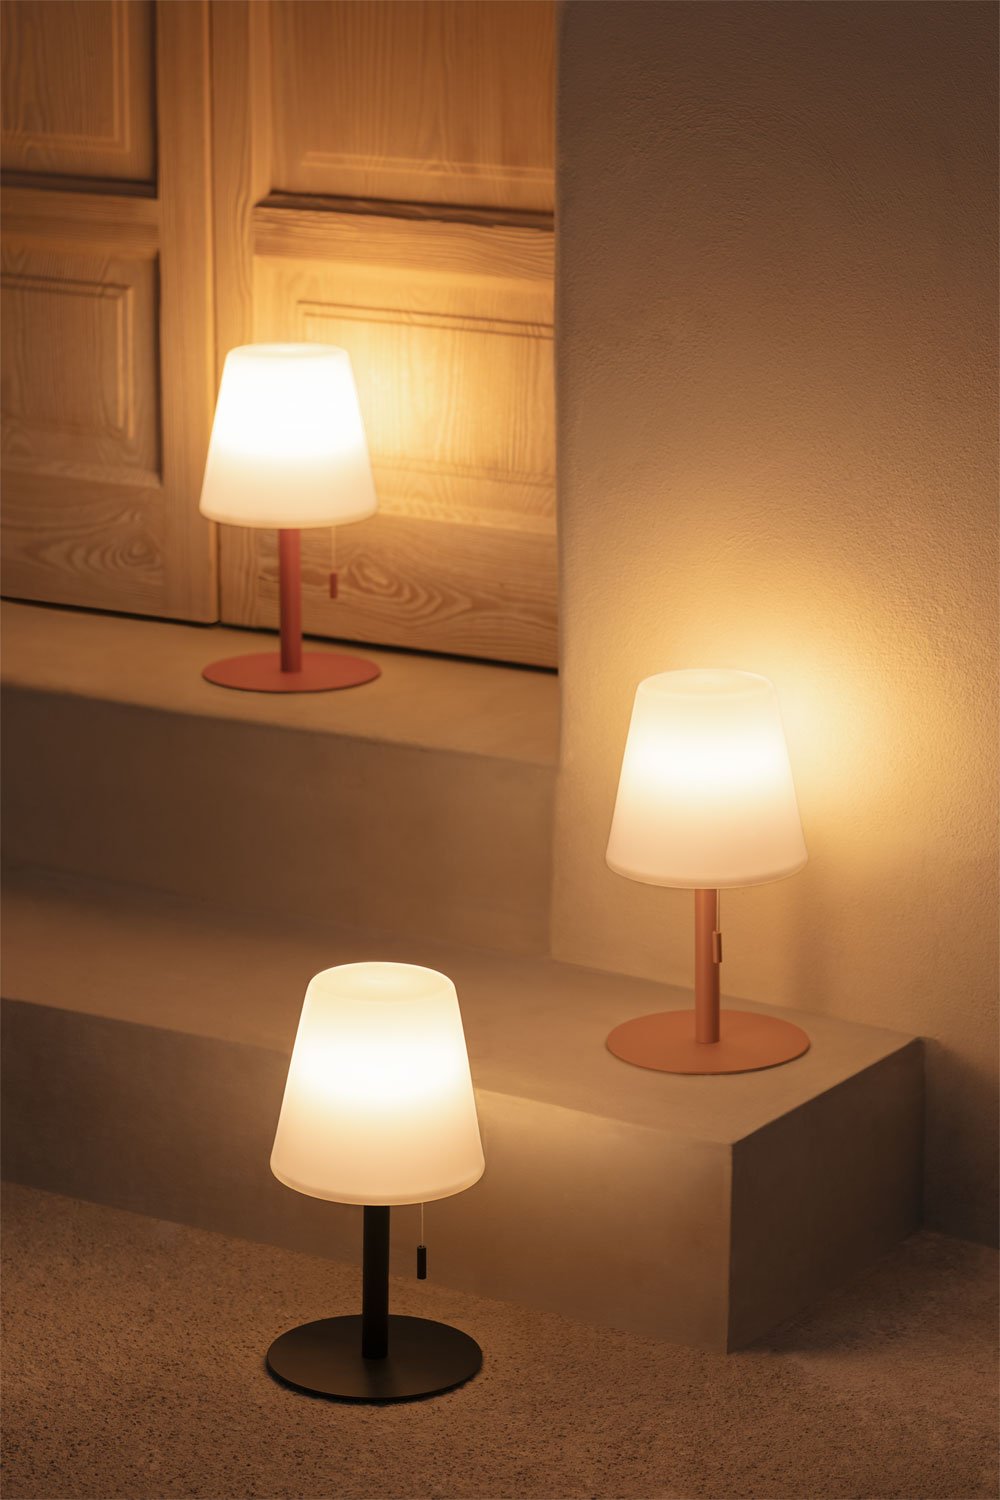 Diez lámparas inalámbricas y recargables, para interior y exterior